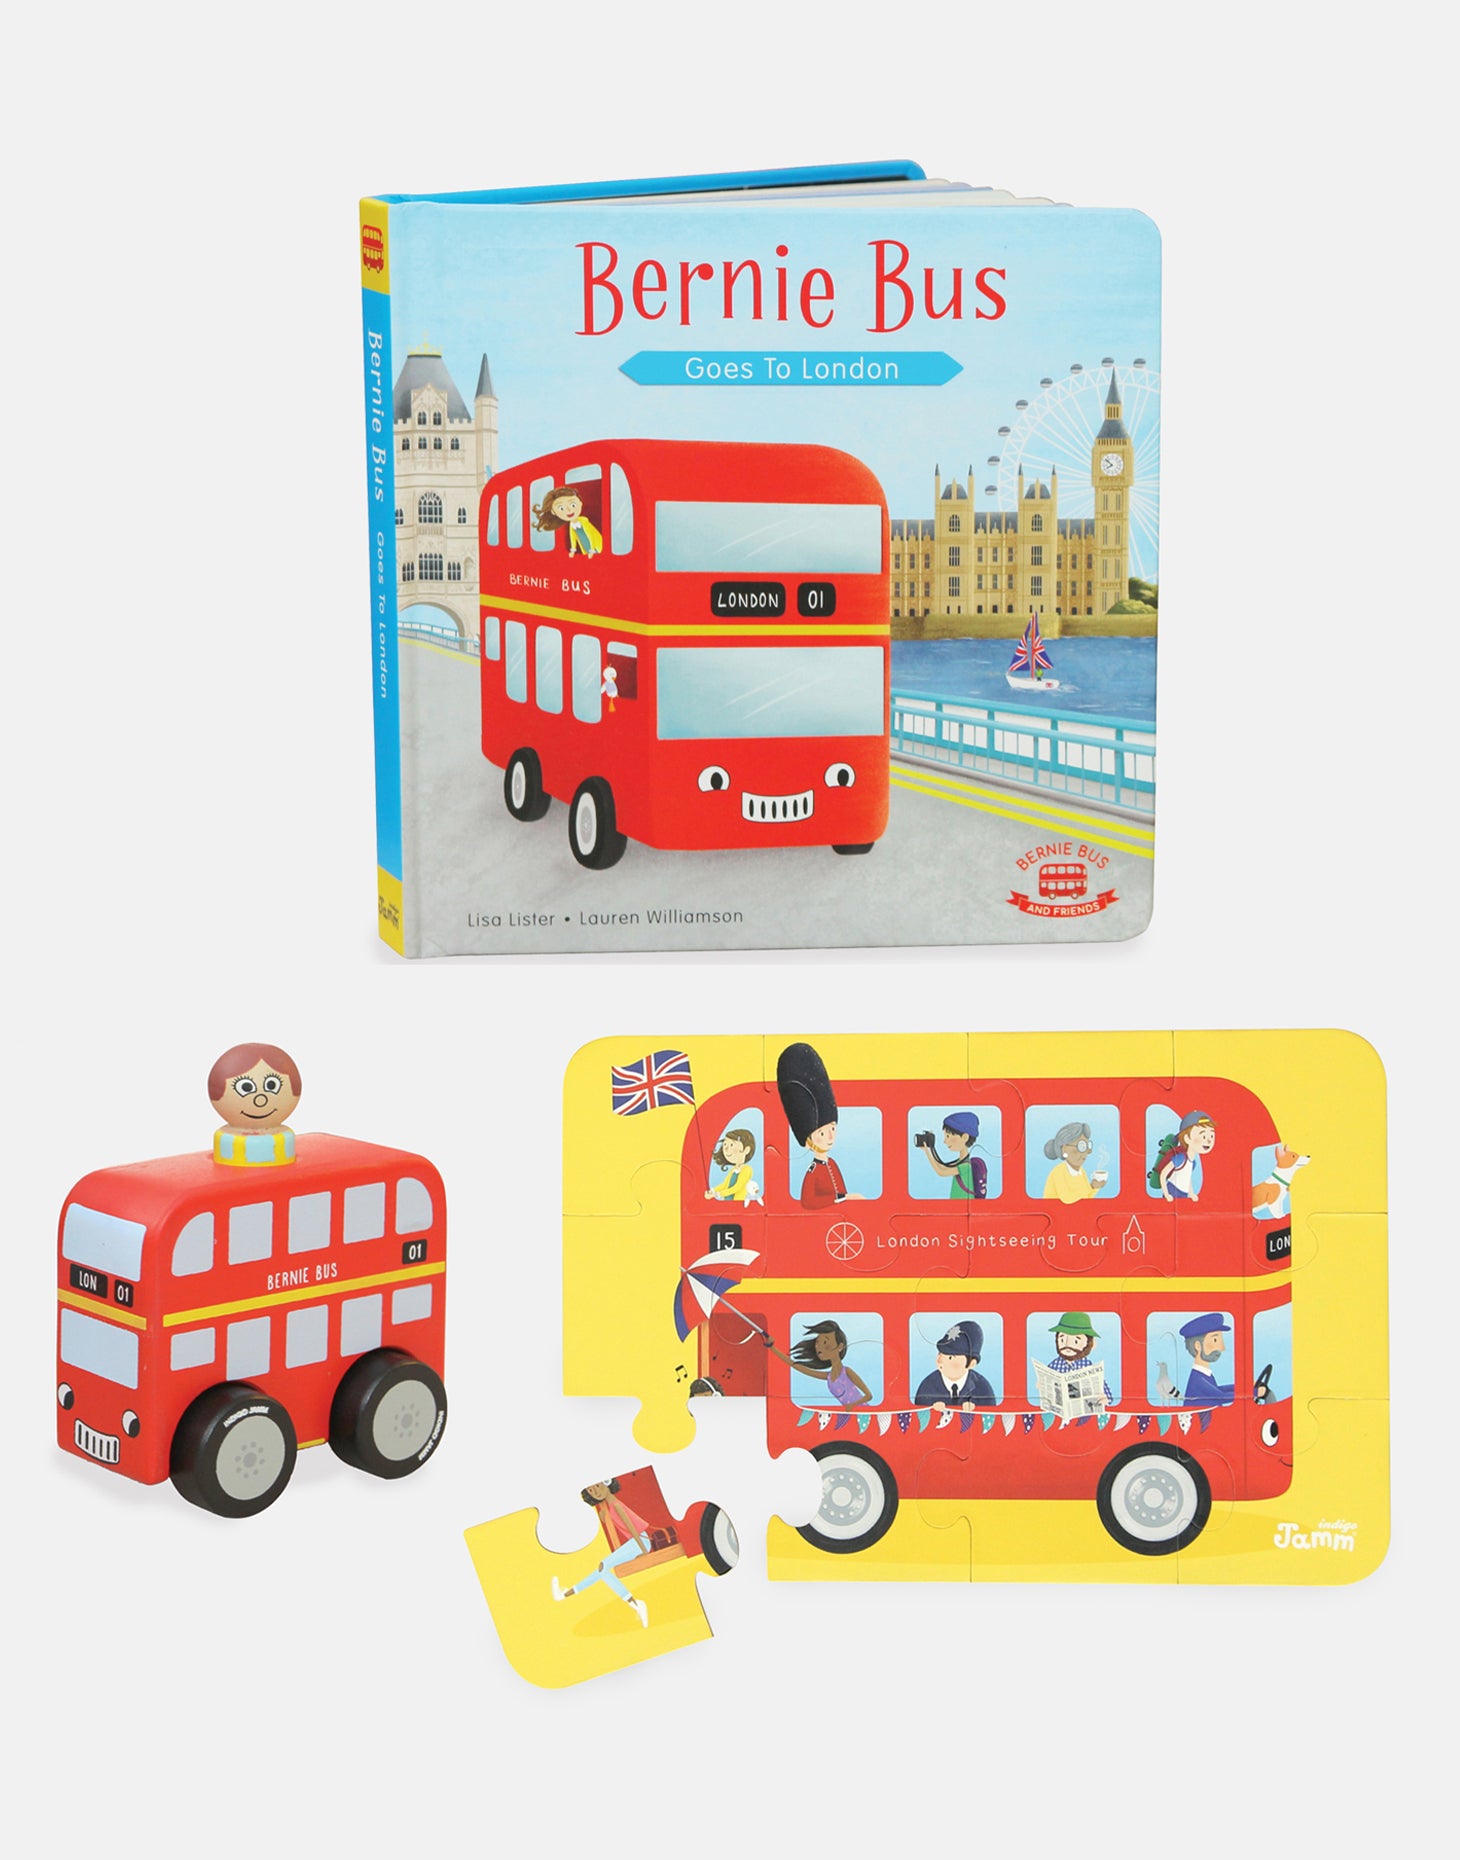 Mini Bernie Bus, London book & Puzzle bundle